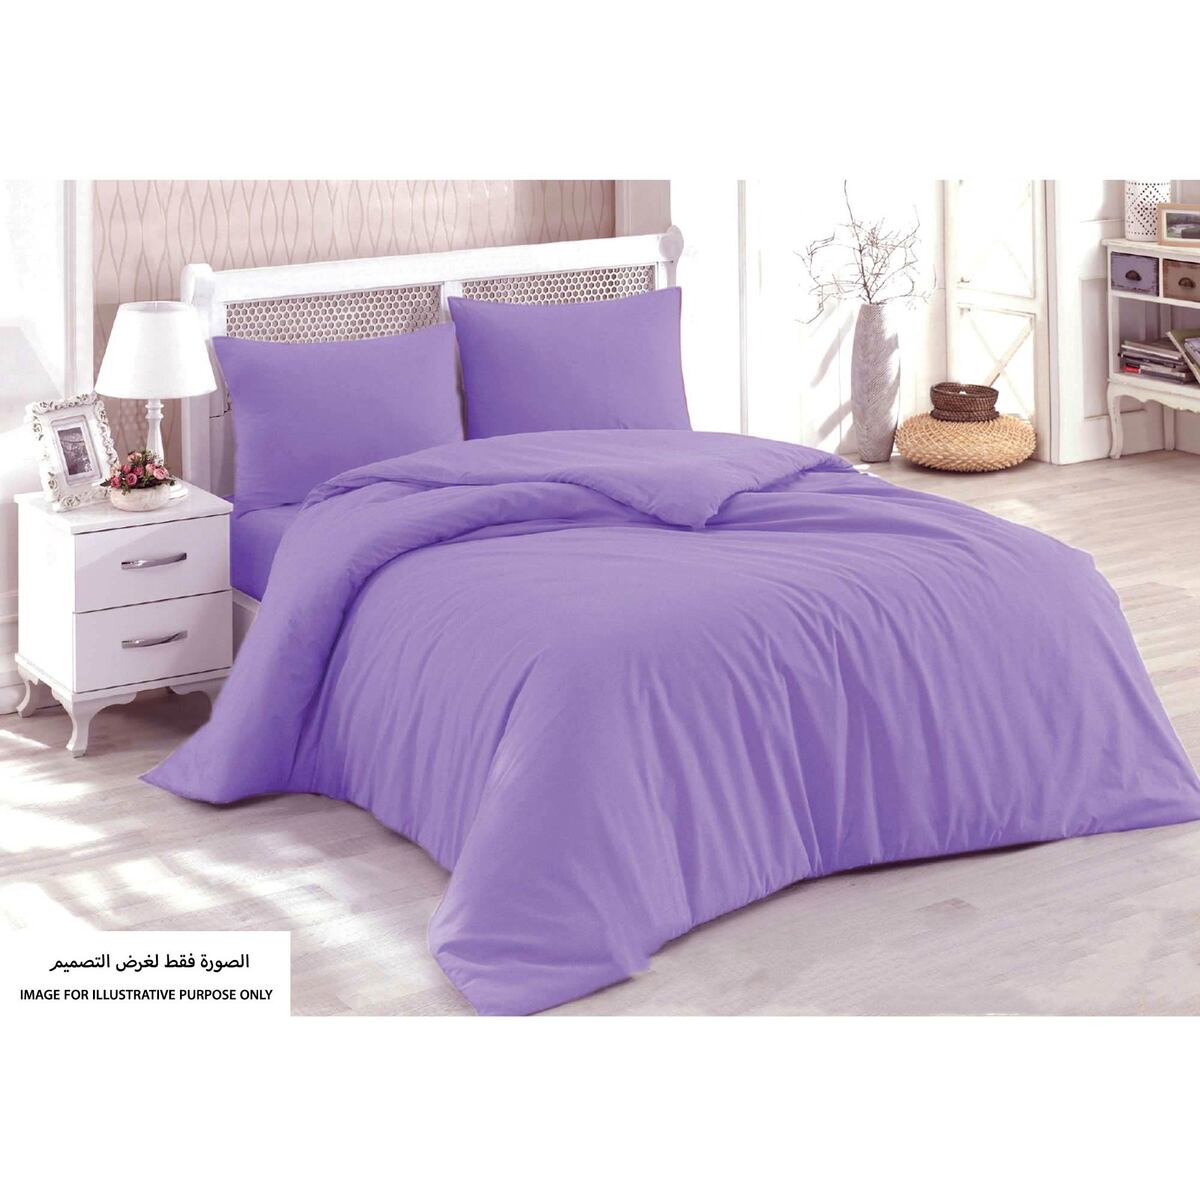 Homewell King Comforter 4pc Set Lilac